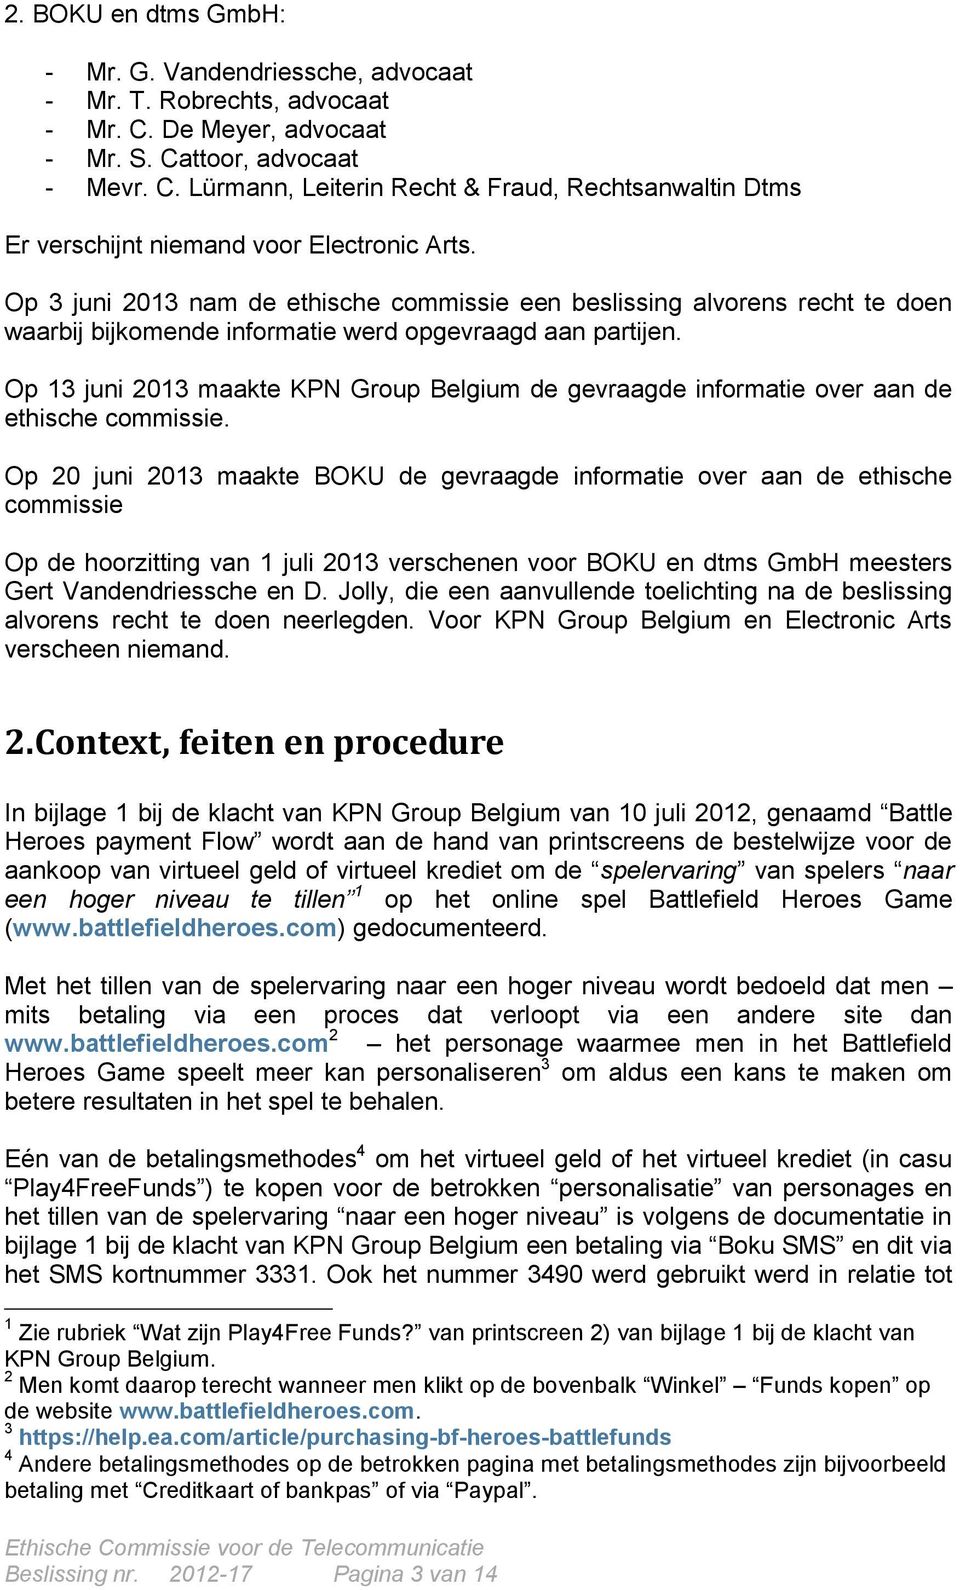 Op 13 juni 2013 maakte KPN Group Belgium de gevraagde informatie over aan de ethische commissie.